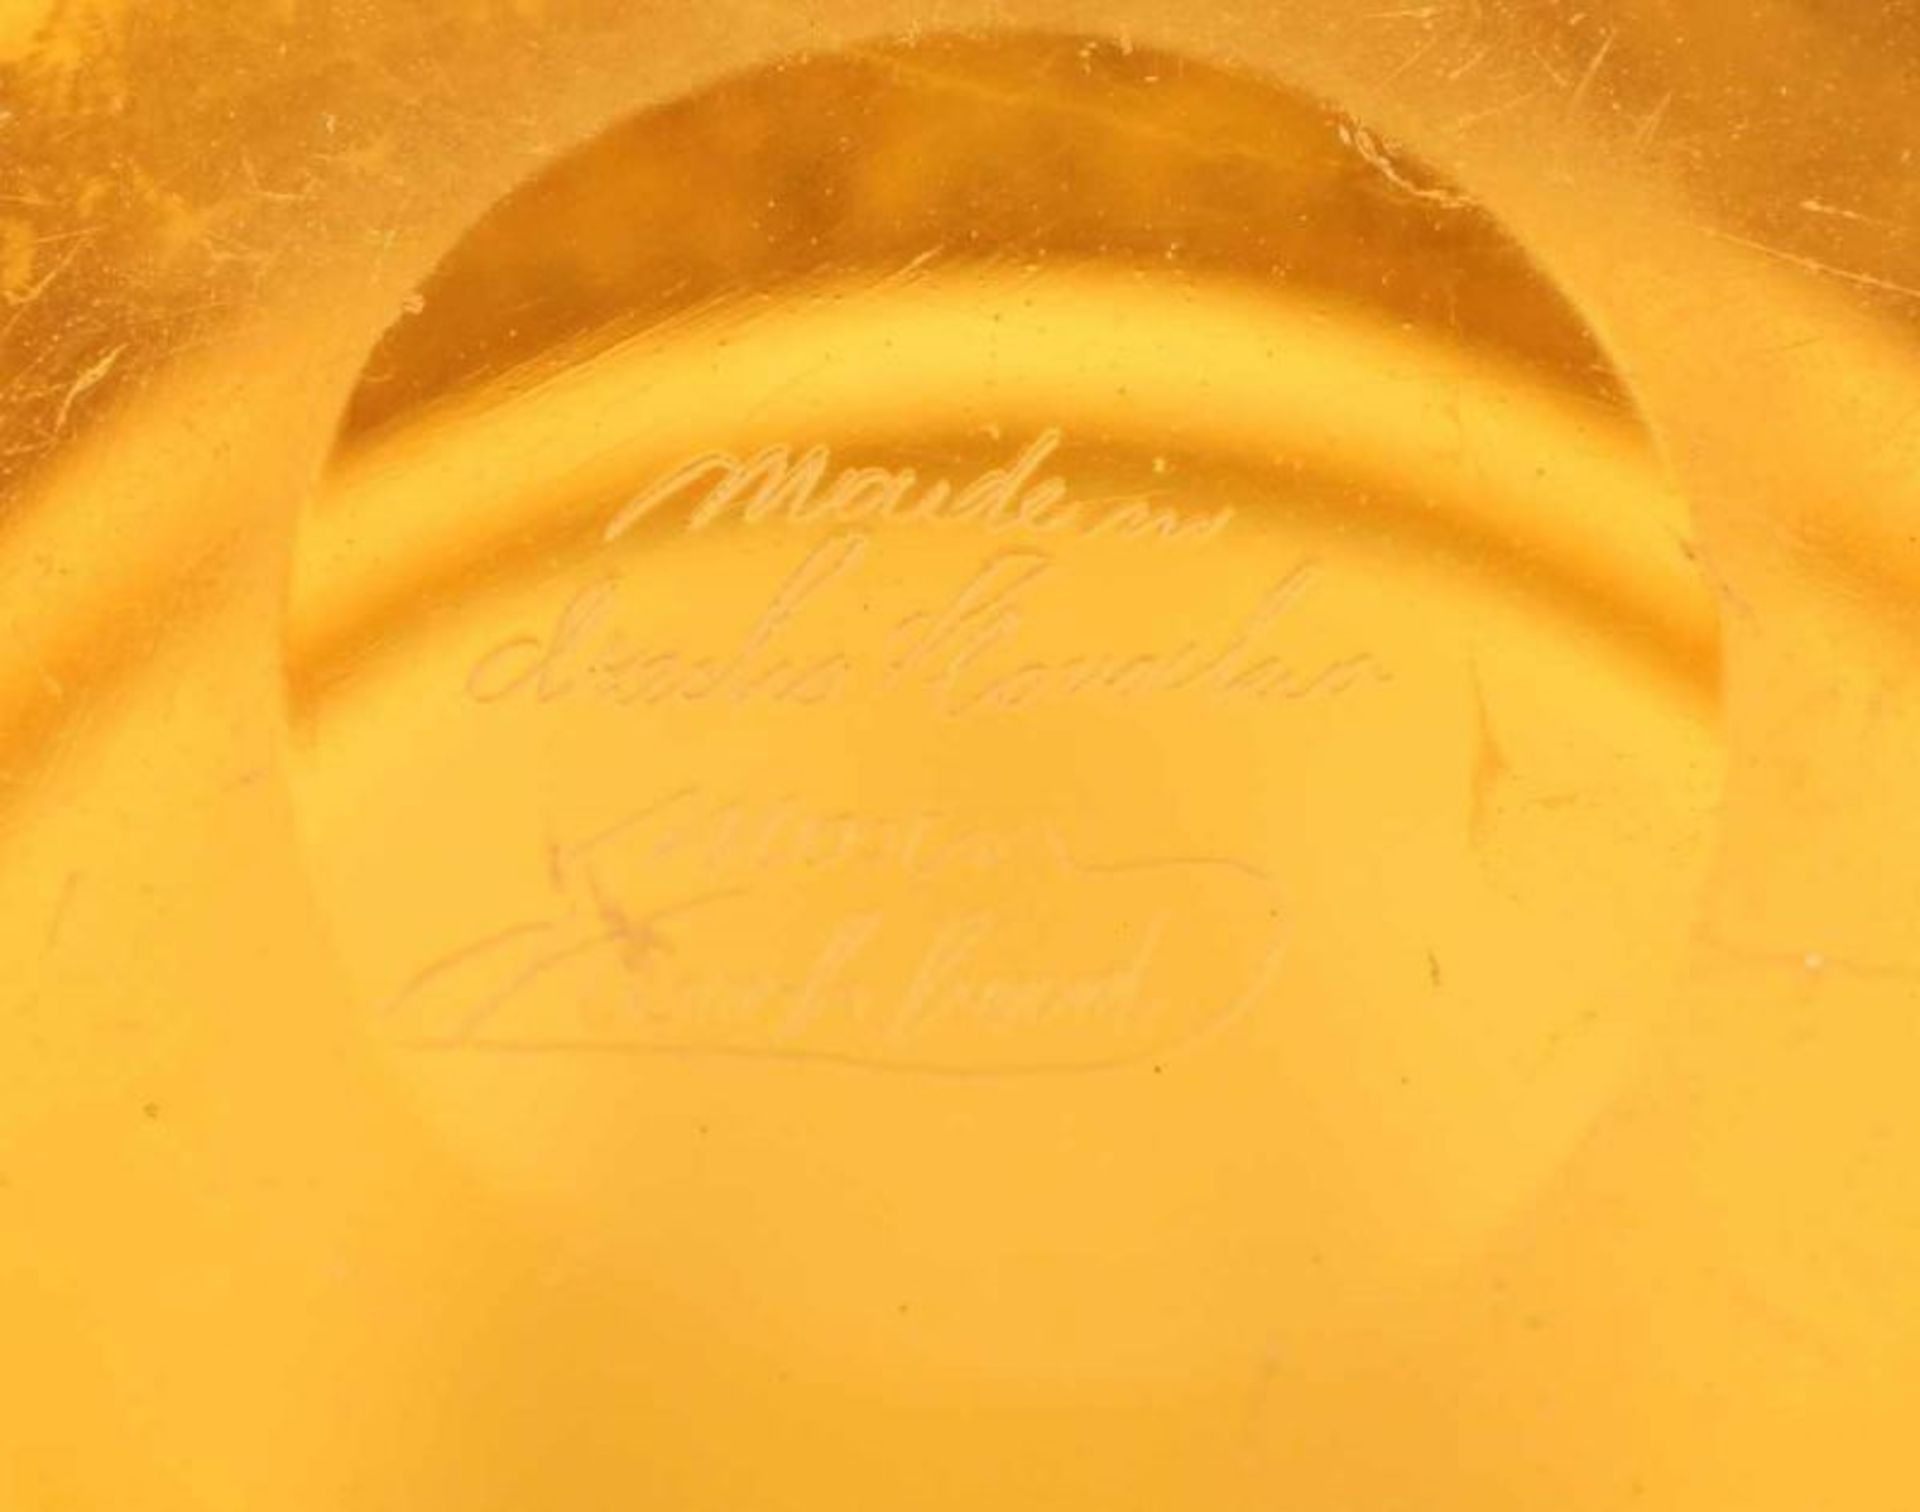 ART DECO-SCHALE, farbloses Glas, amberfarben getönt, geätzter, goldfarben patinierter Amazonenfries, - Bild 2 aus 2